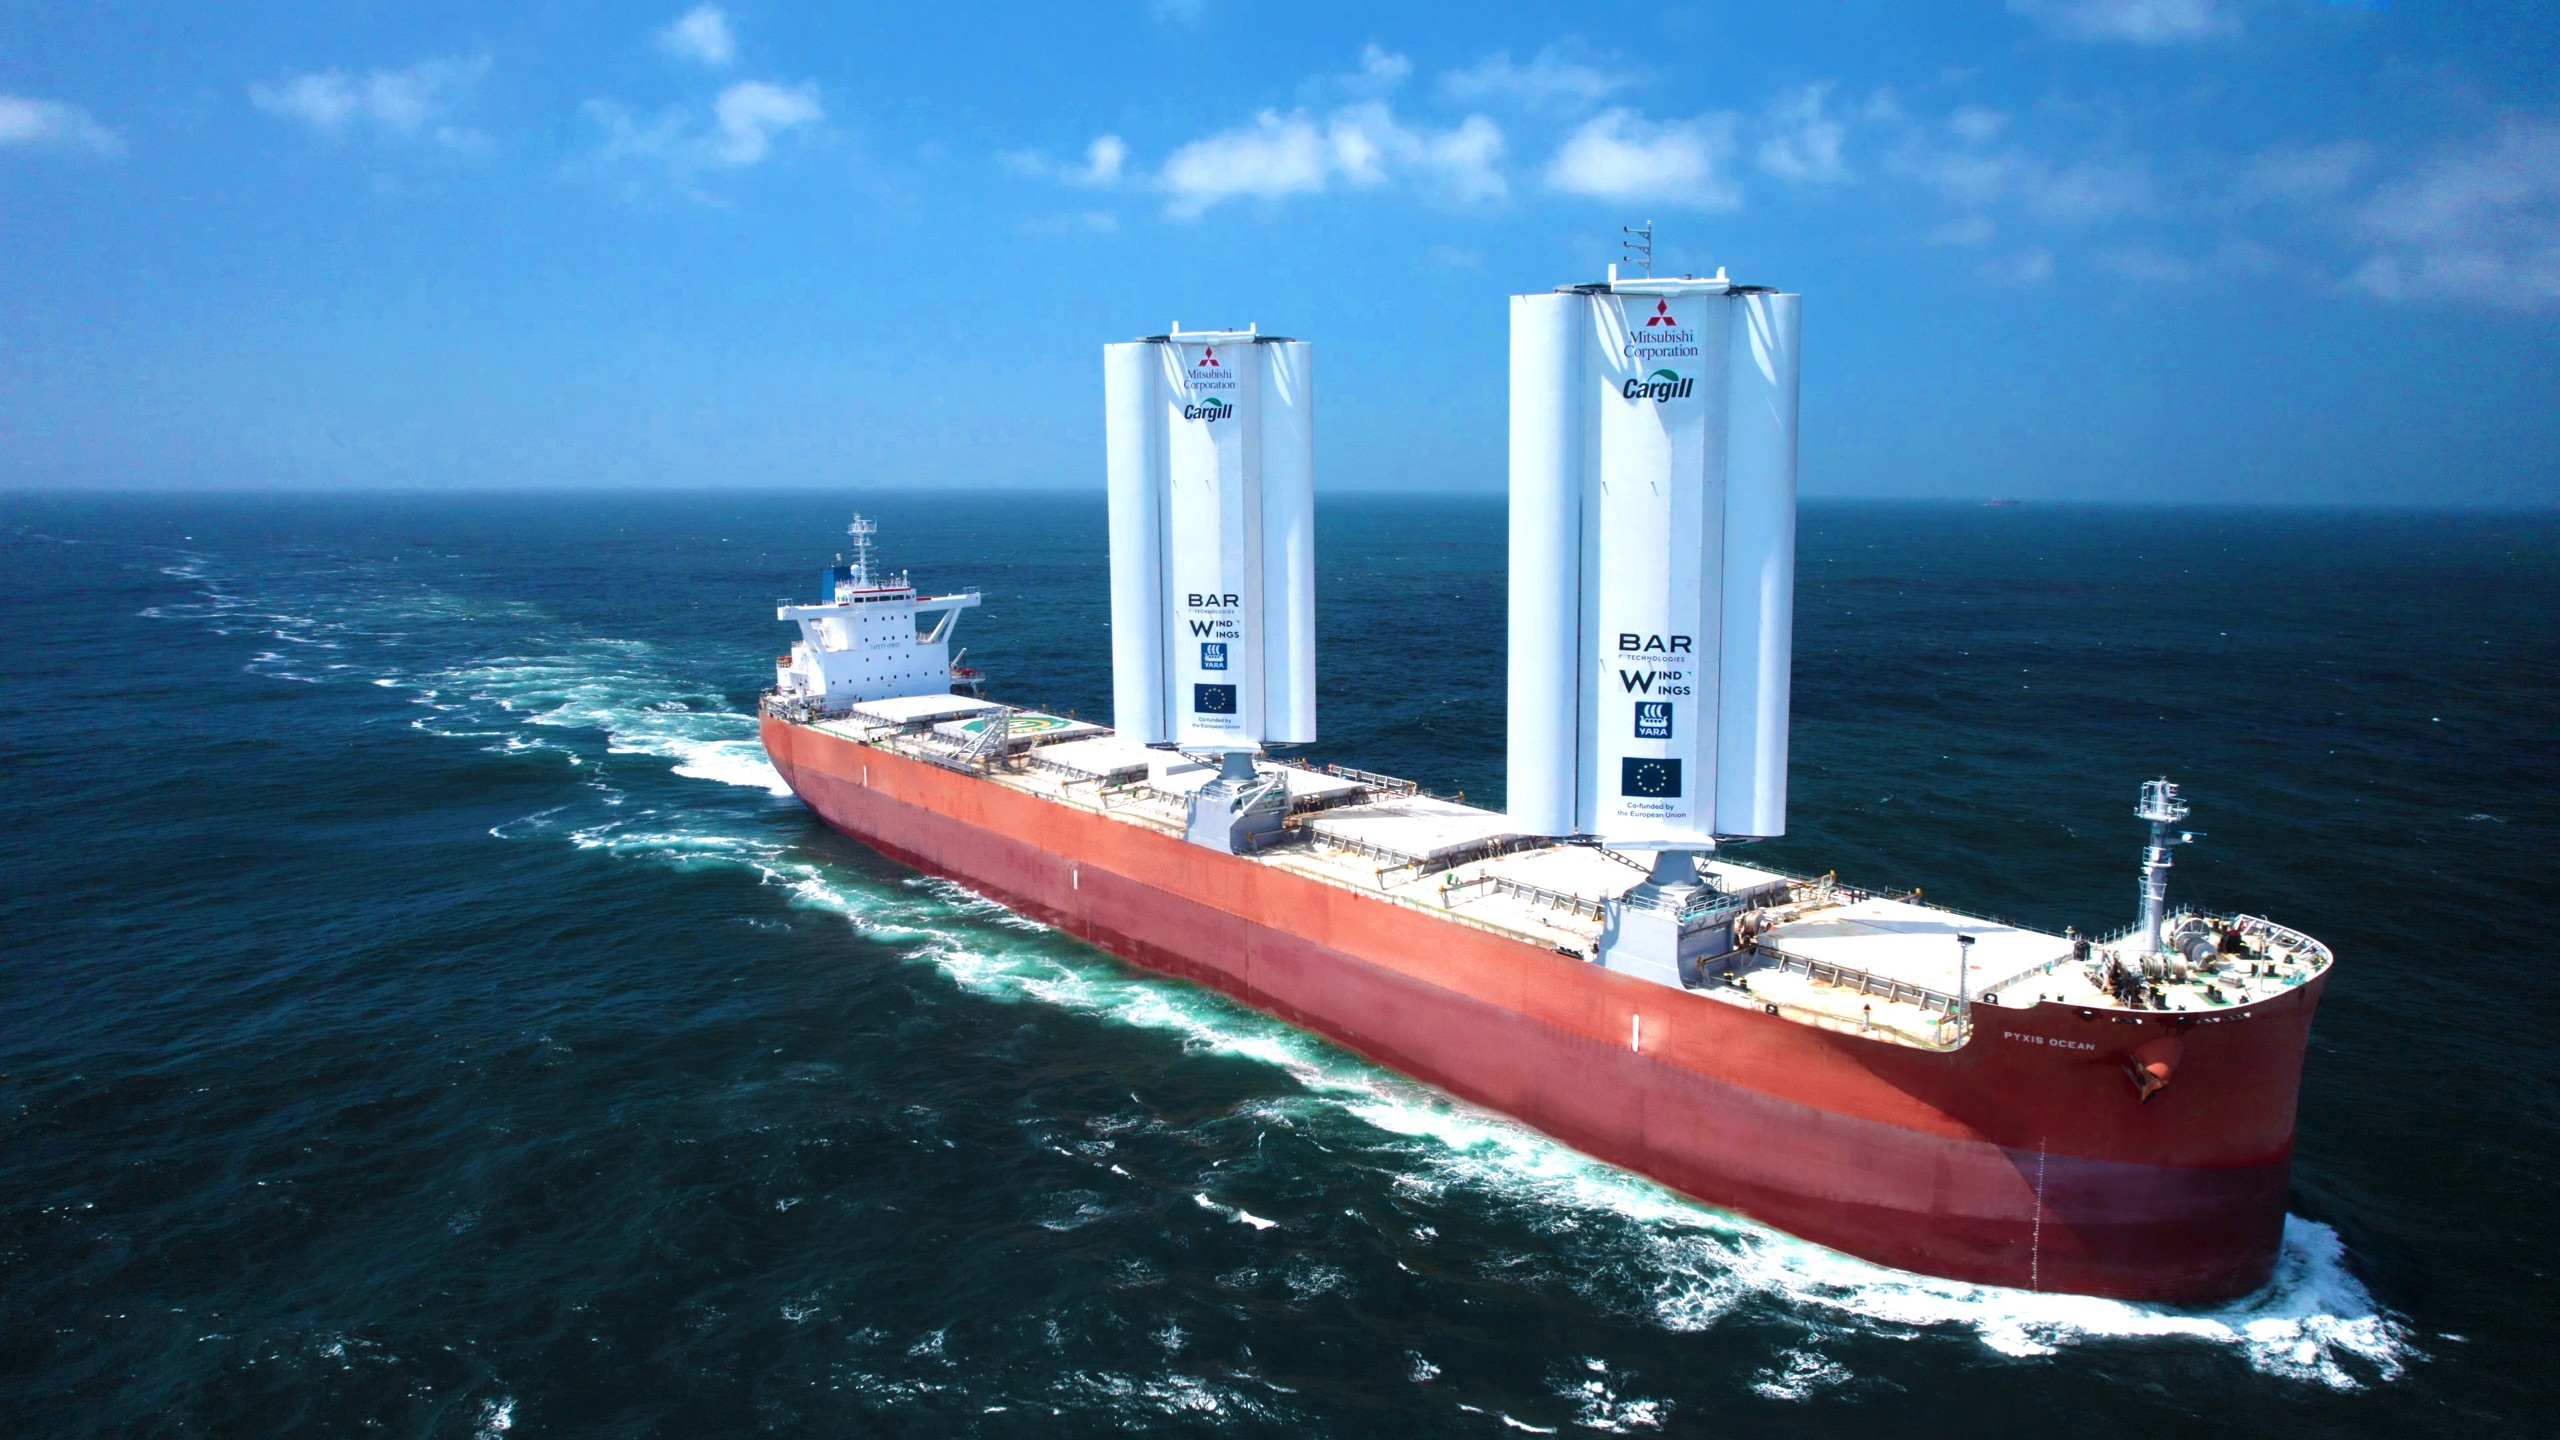 Statek Pyxis Ocean, napędzany wiatrem, nowoczesne żagle, fot. BAR Technologies